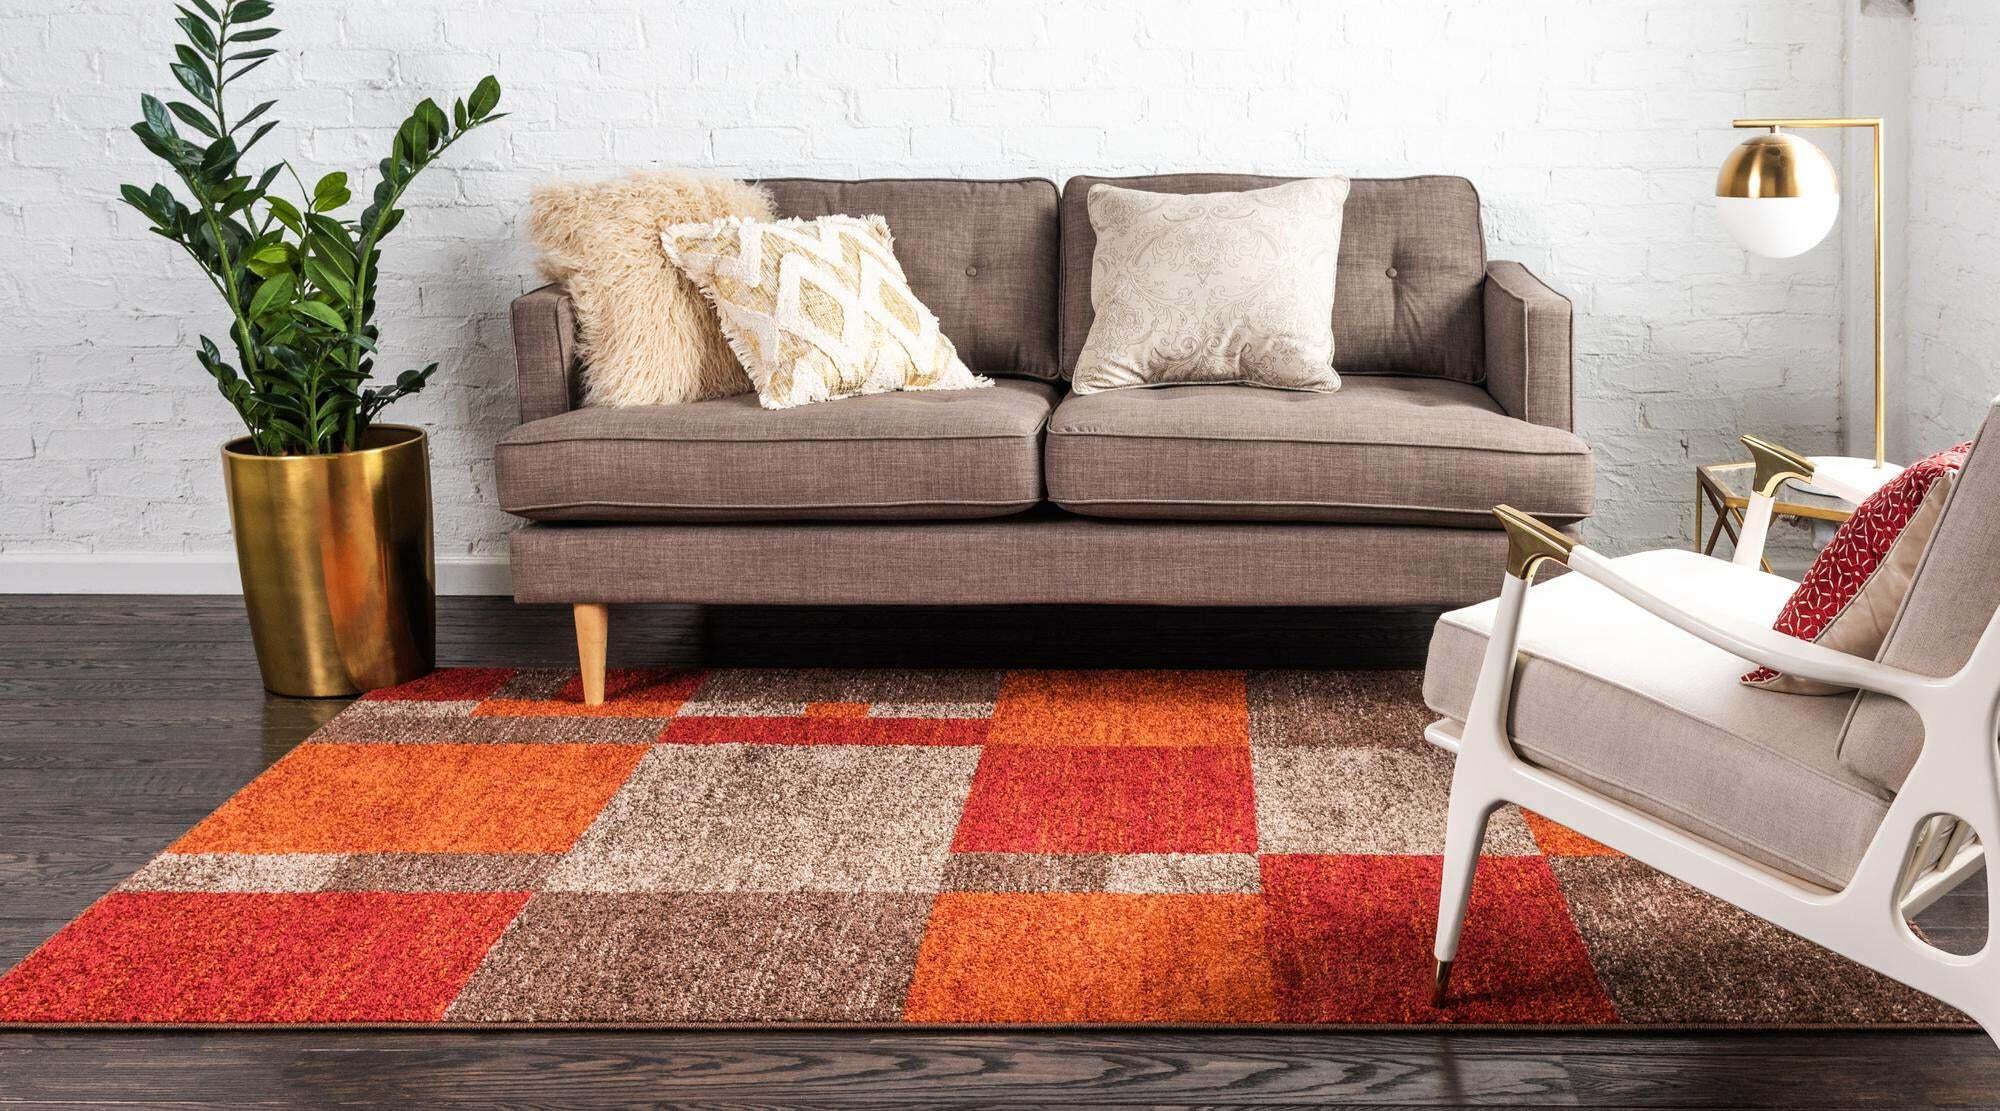 Unique Loom Indoor Rugs - Autumn Geometric 7x10 Rectangular Rug Multi & Dark Brown